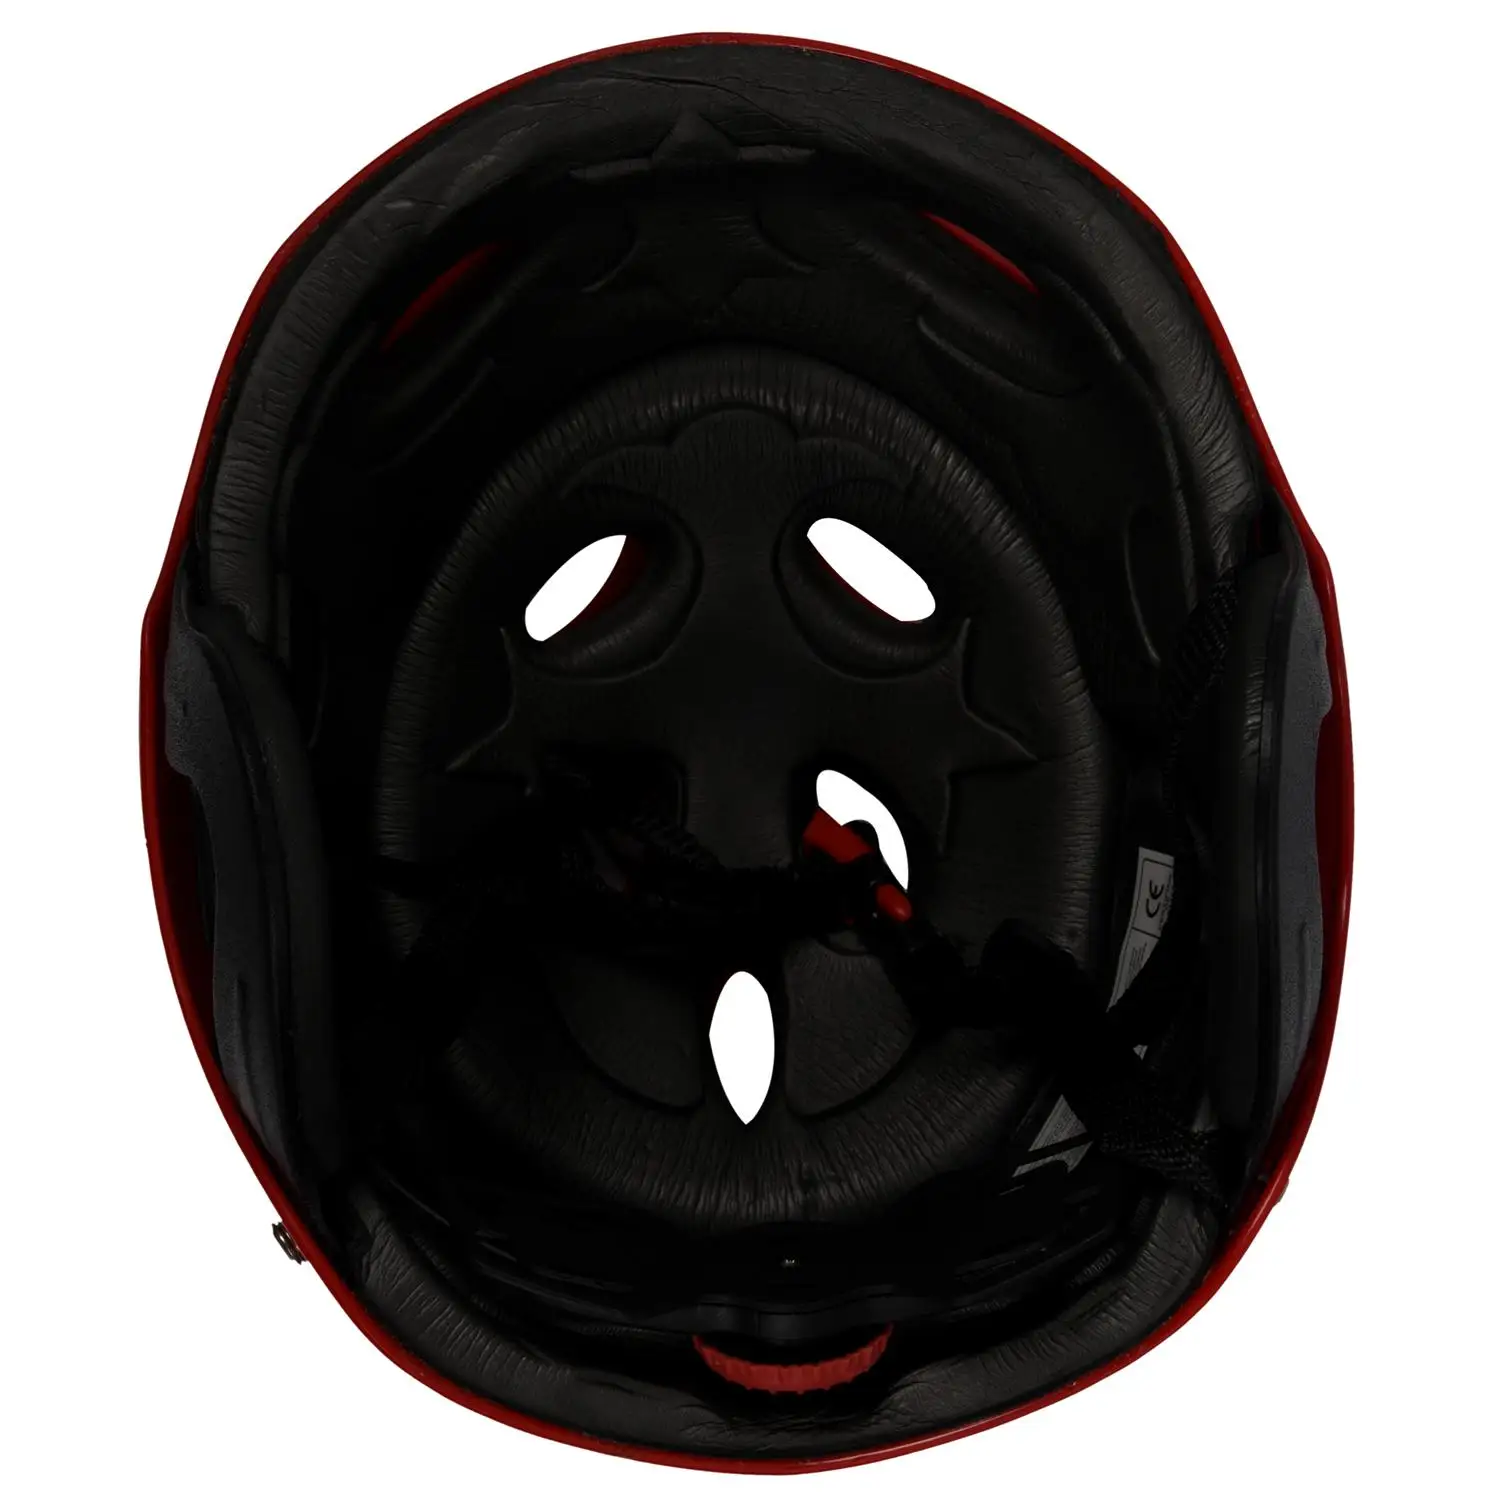 Защитный шлем с 11 дыхательными отверстиями для водных видов спорта Каяк Каноэ Гребля для серфинга - Красный - 1